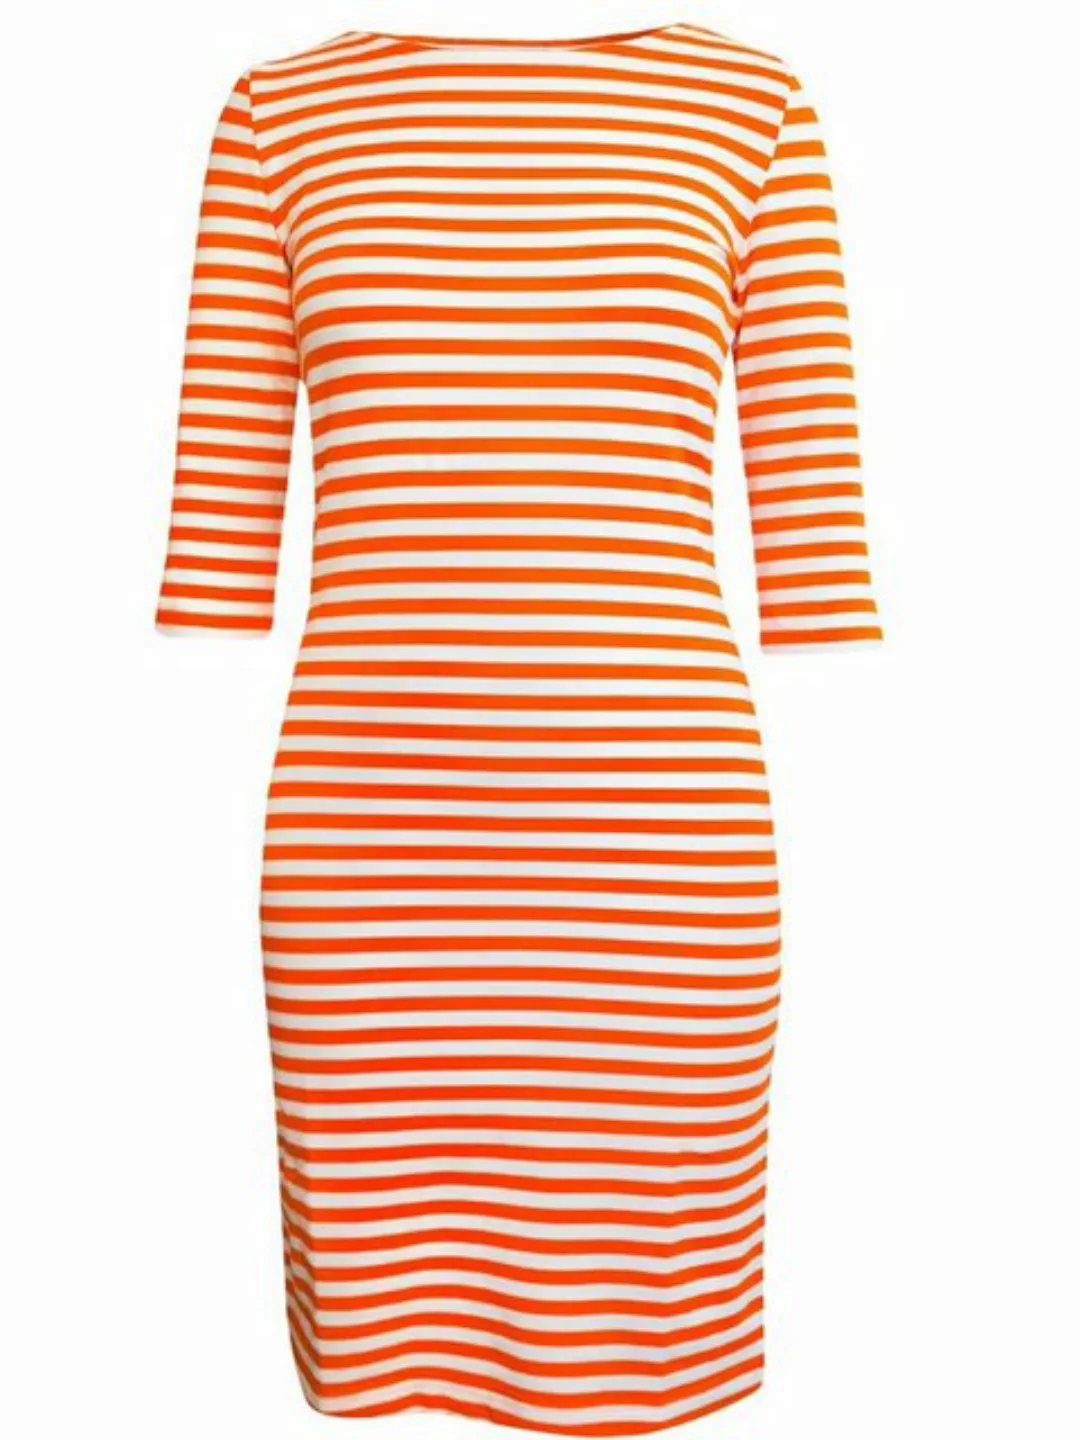 Brigitte von Boch Sommerkleid Portola Kleid orange-weiss günstig online kaufen